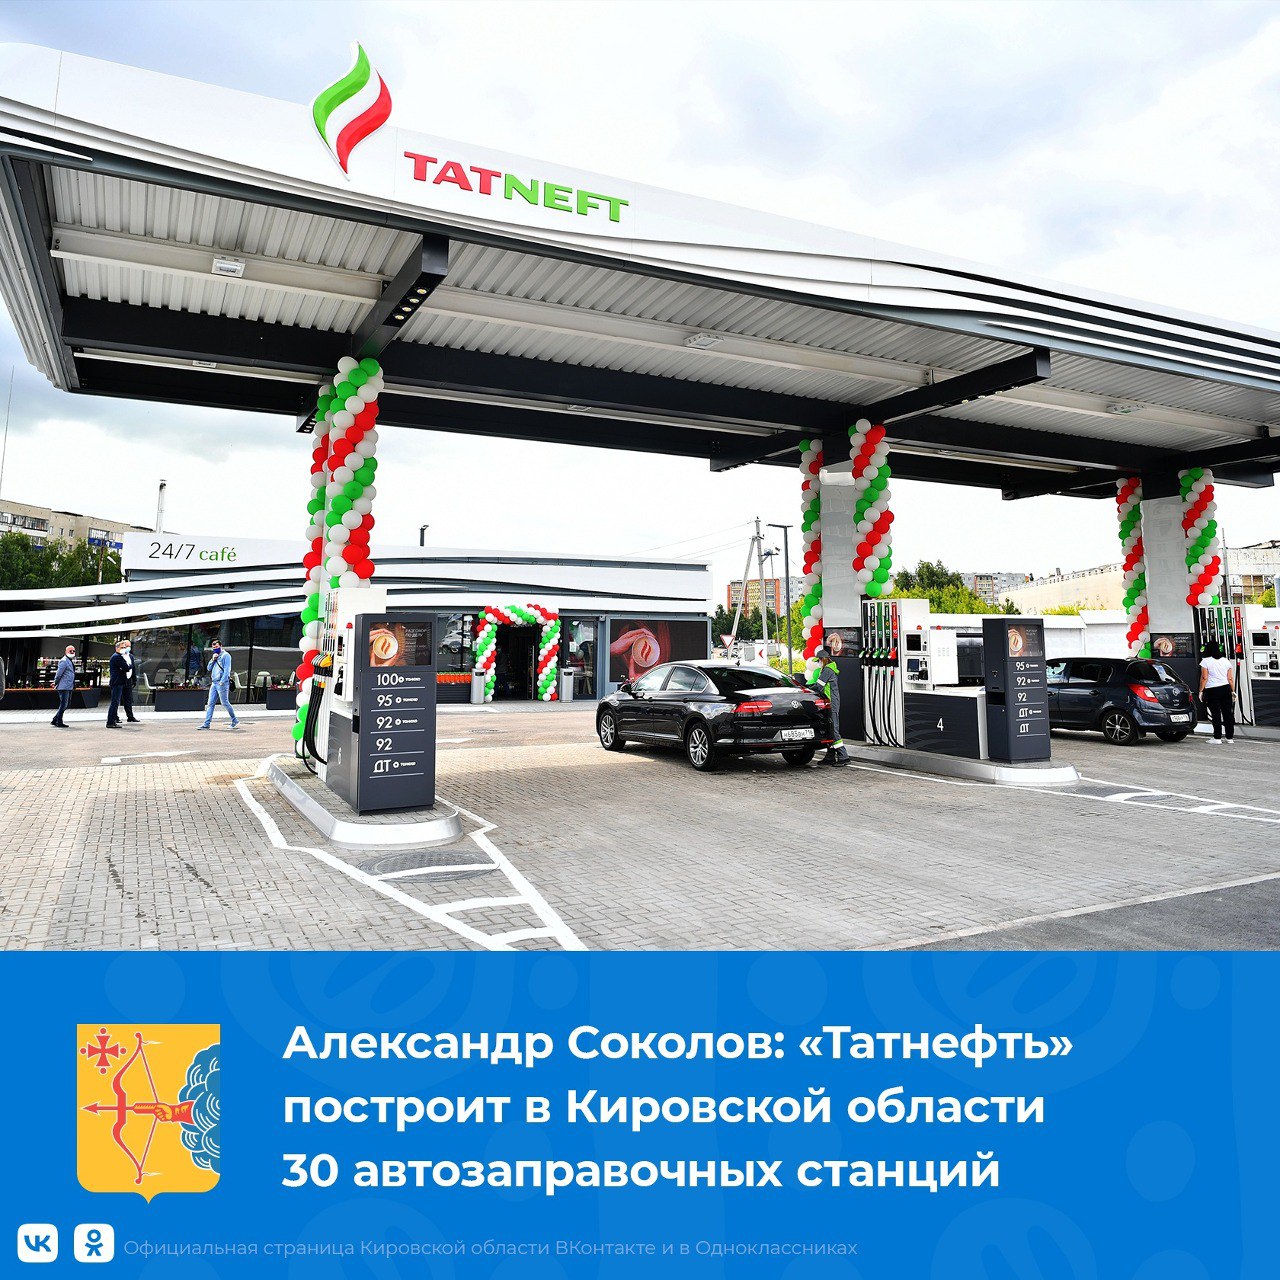 Компания «Татнефть» построит в Кировской области 30 автозаправочных станций.